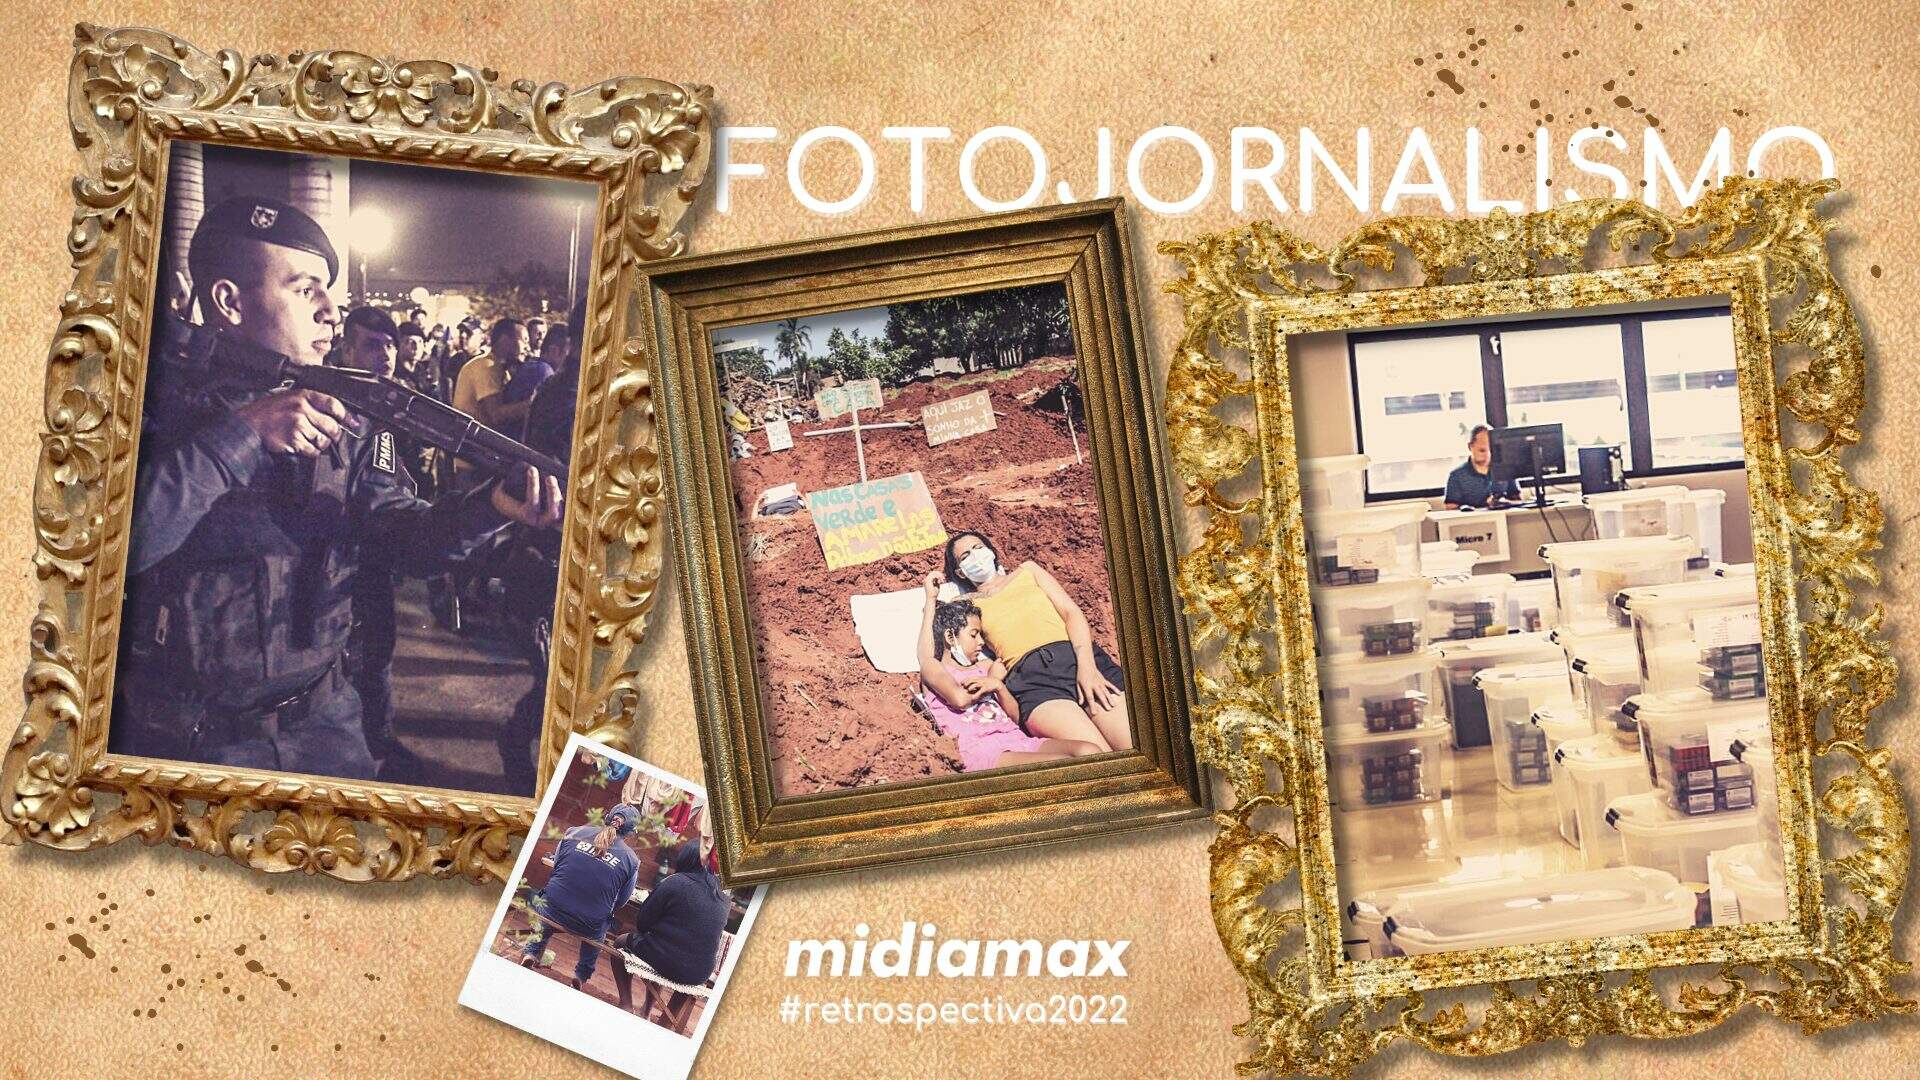 #Retrospectiva2022 pelas lentes dos fotojornalistas do Midiamax